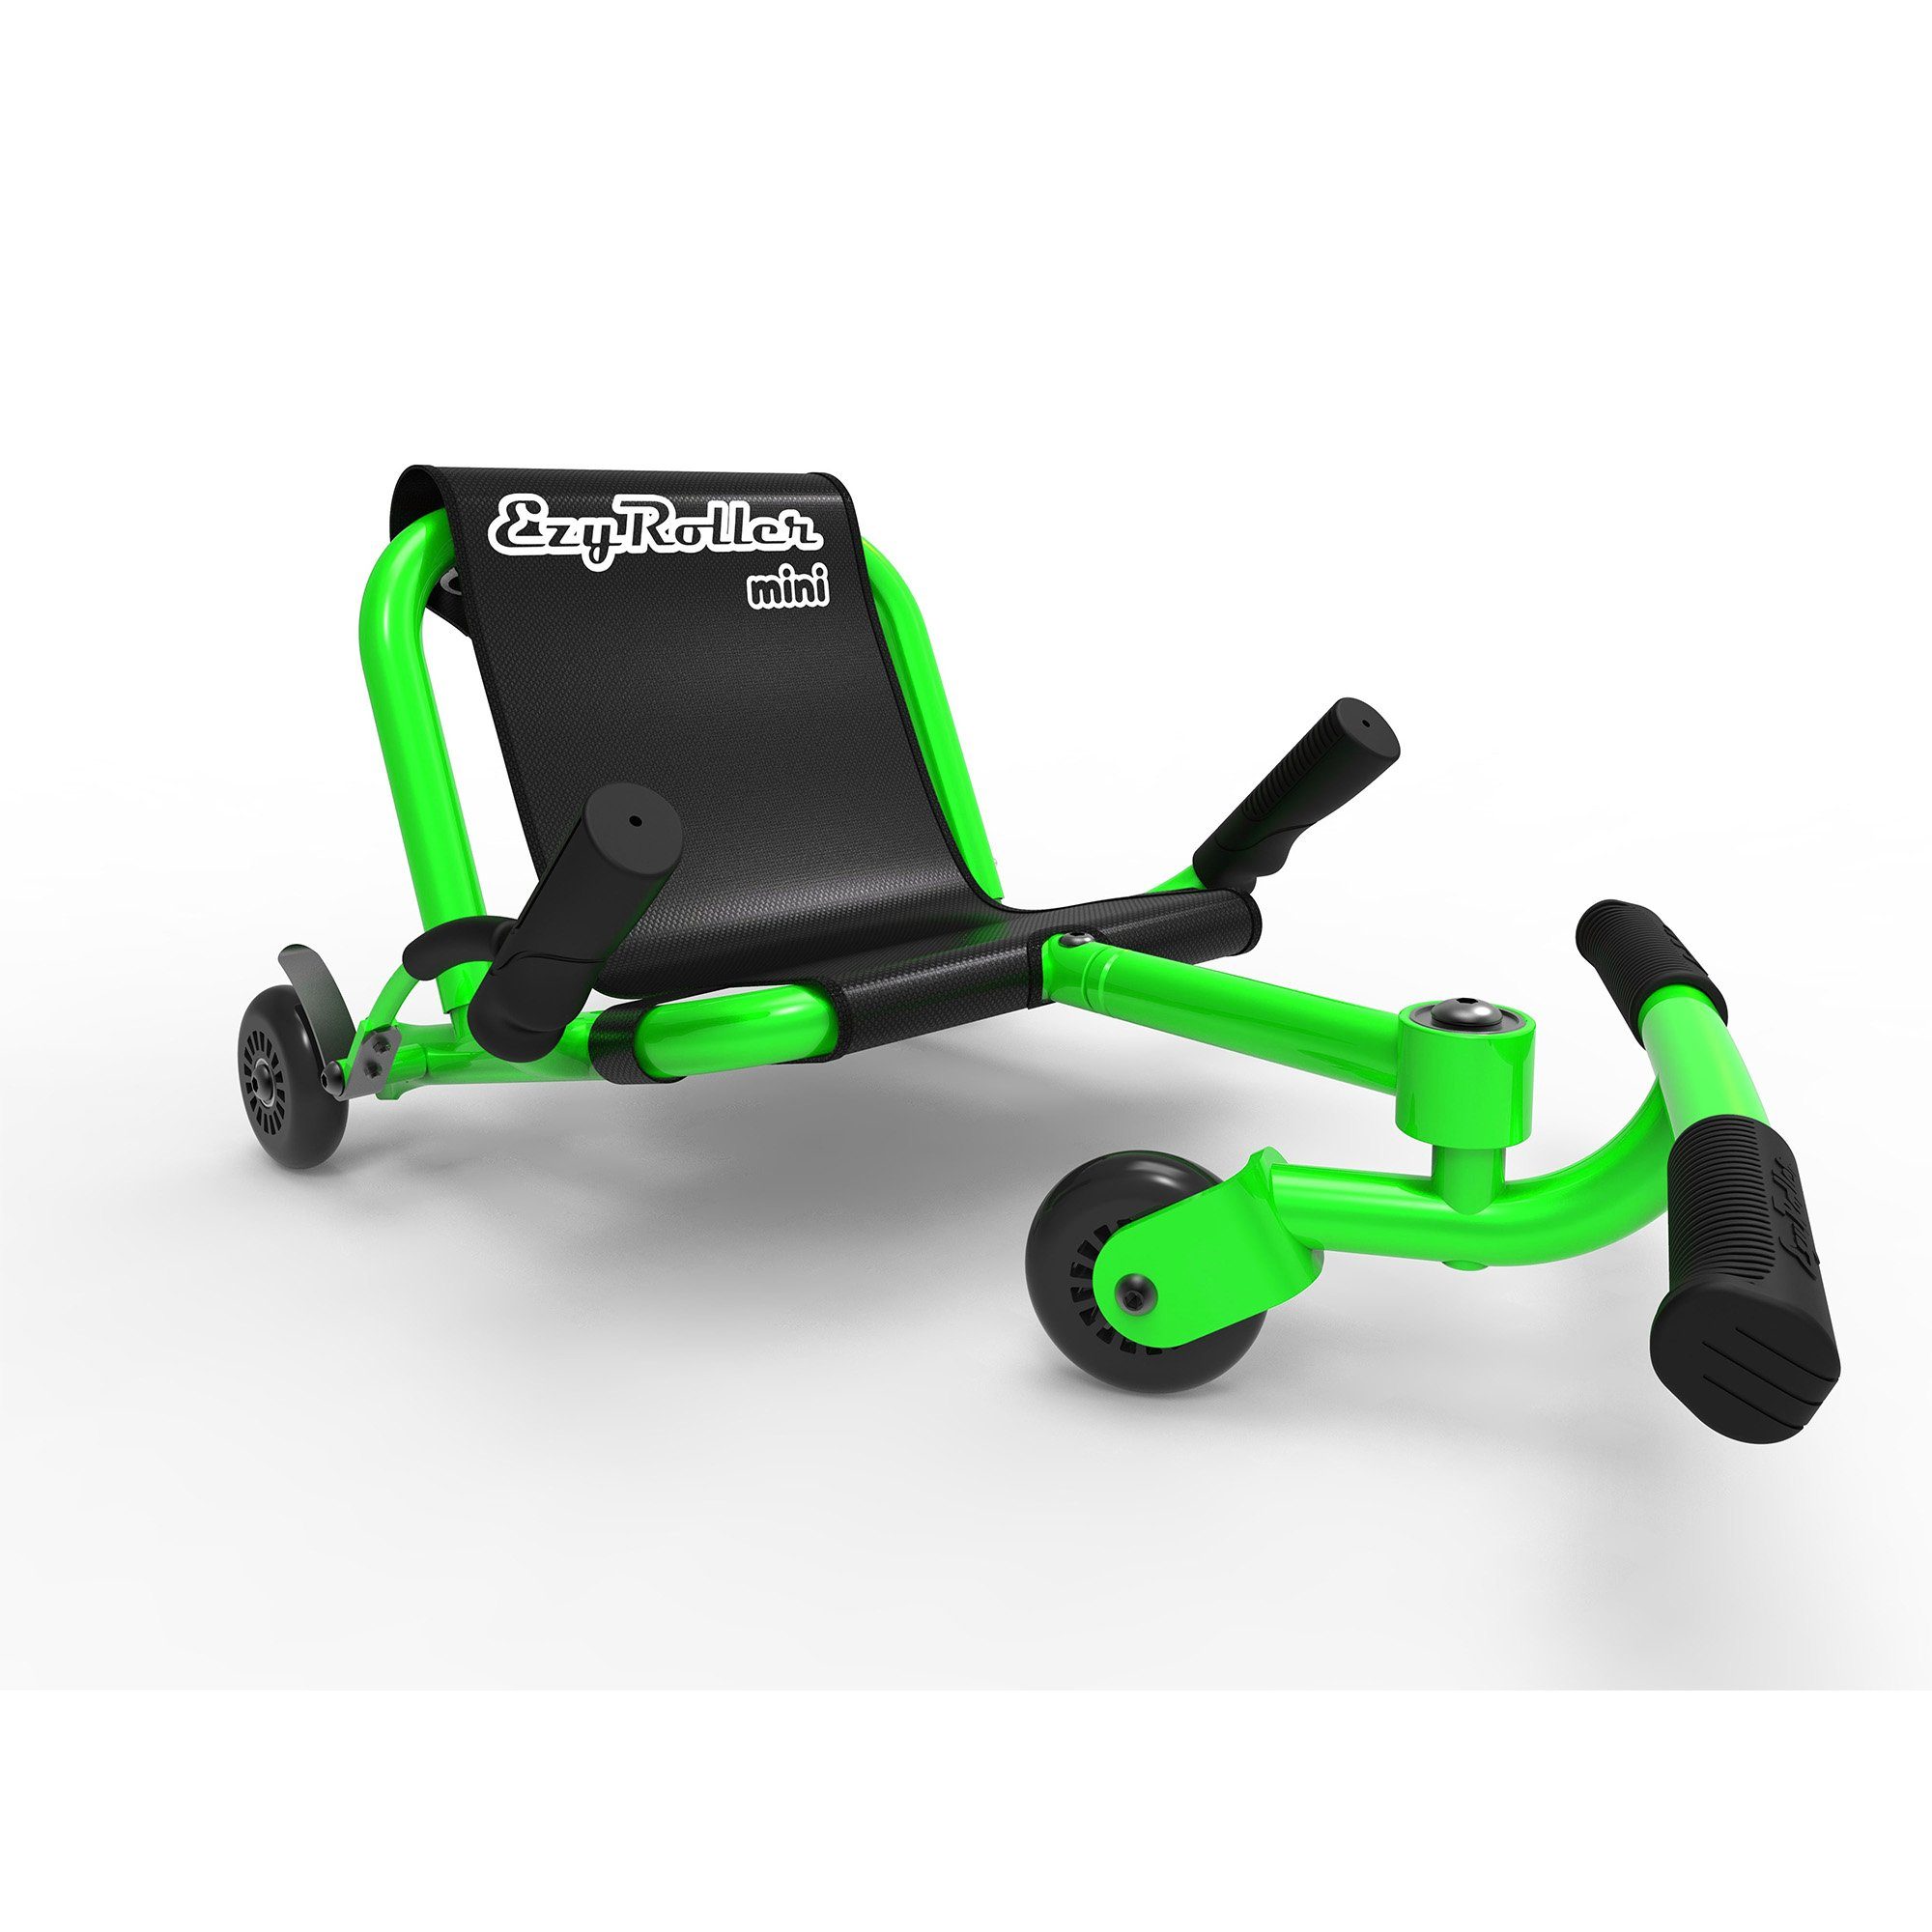 EzyRoller Dreiradscooter Mini, Kinderfahrzeug für Kleinkinder 2 - 4 Jahre Dreirad Bewegungsspielzeug grün